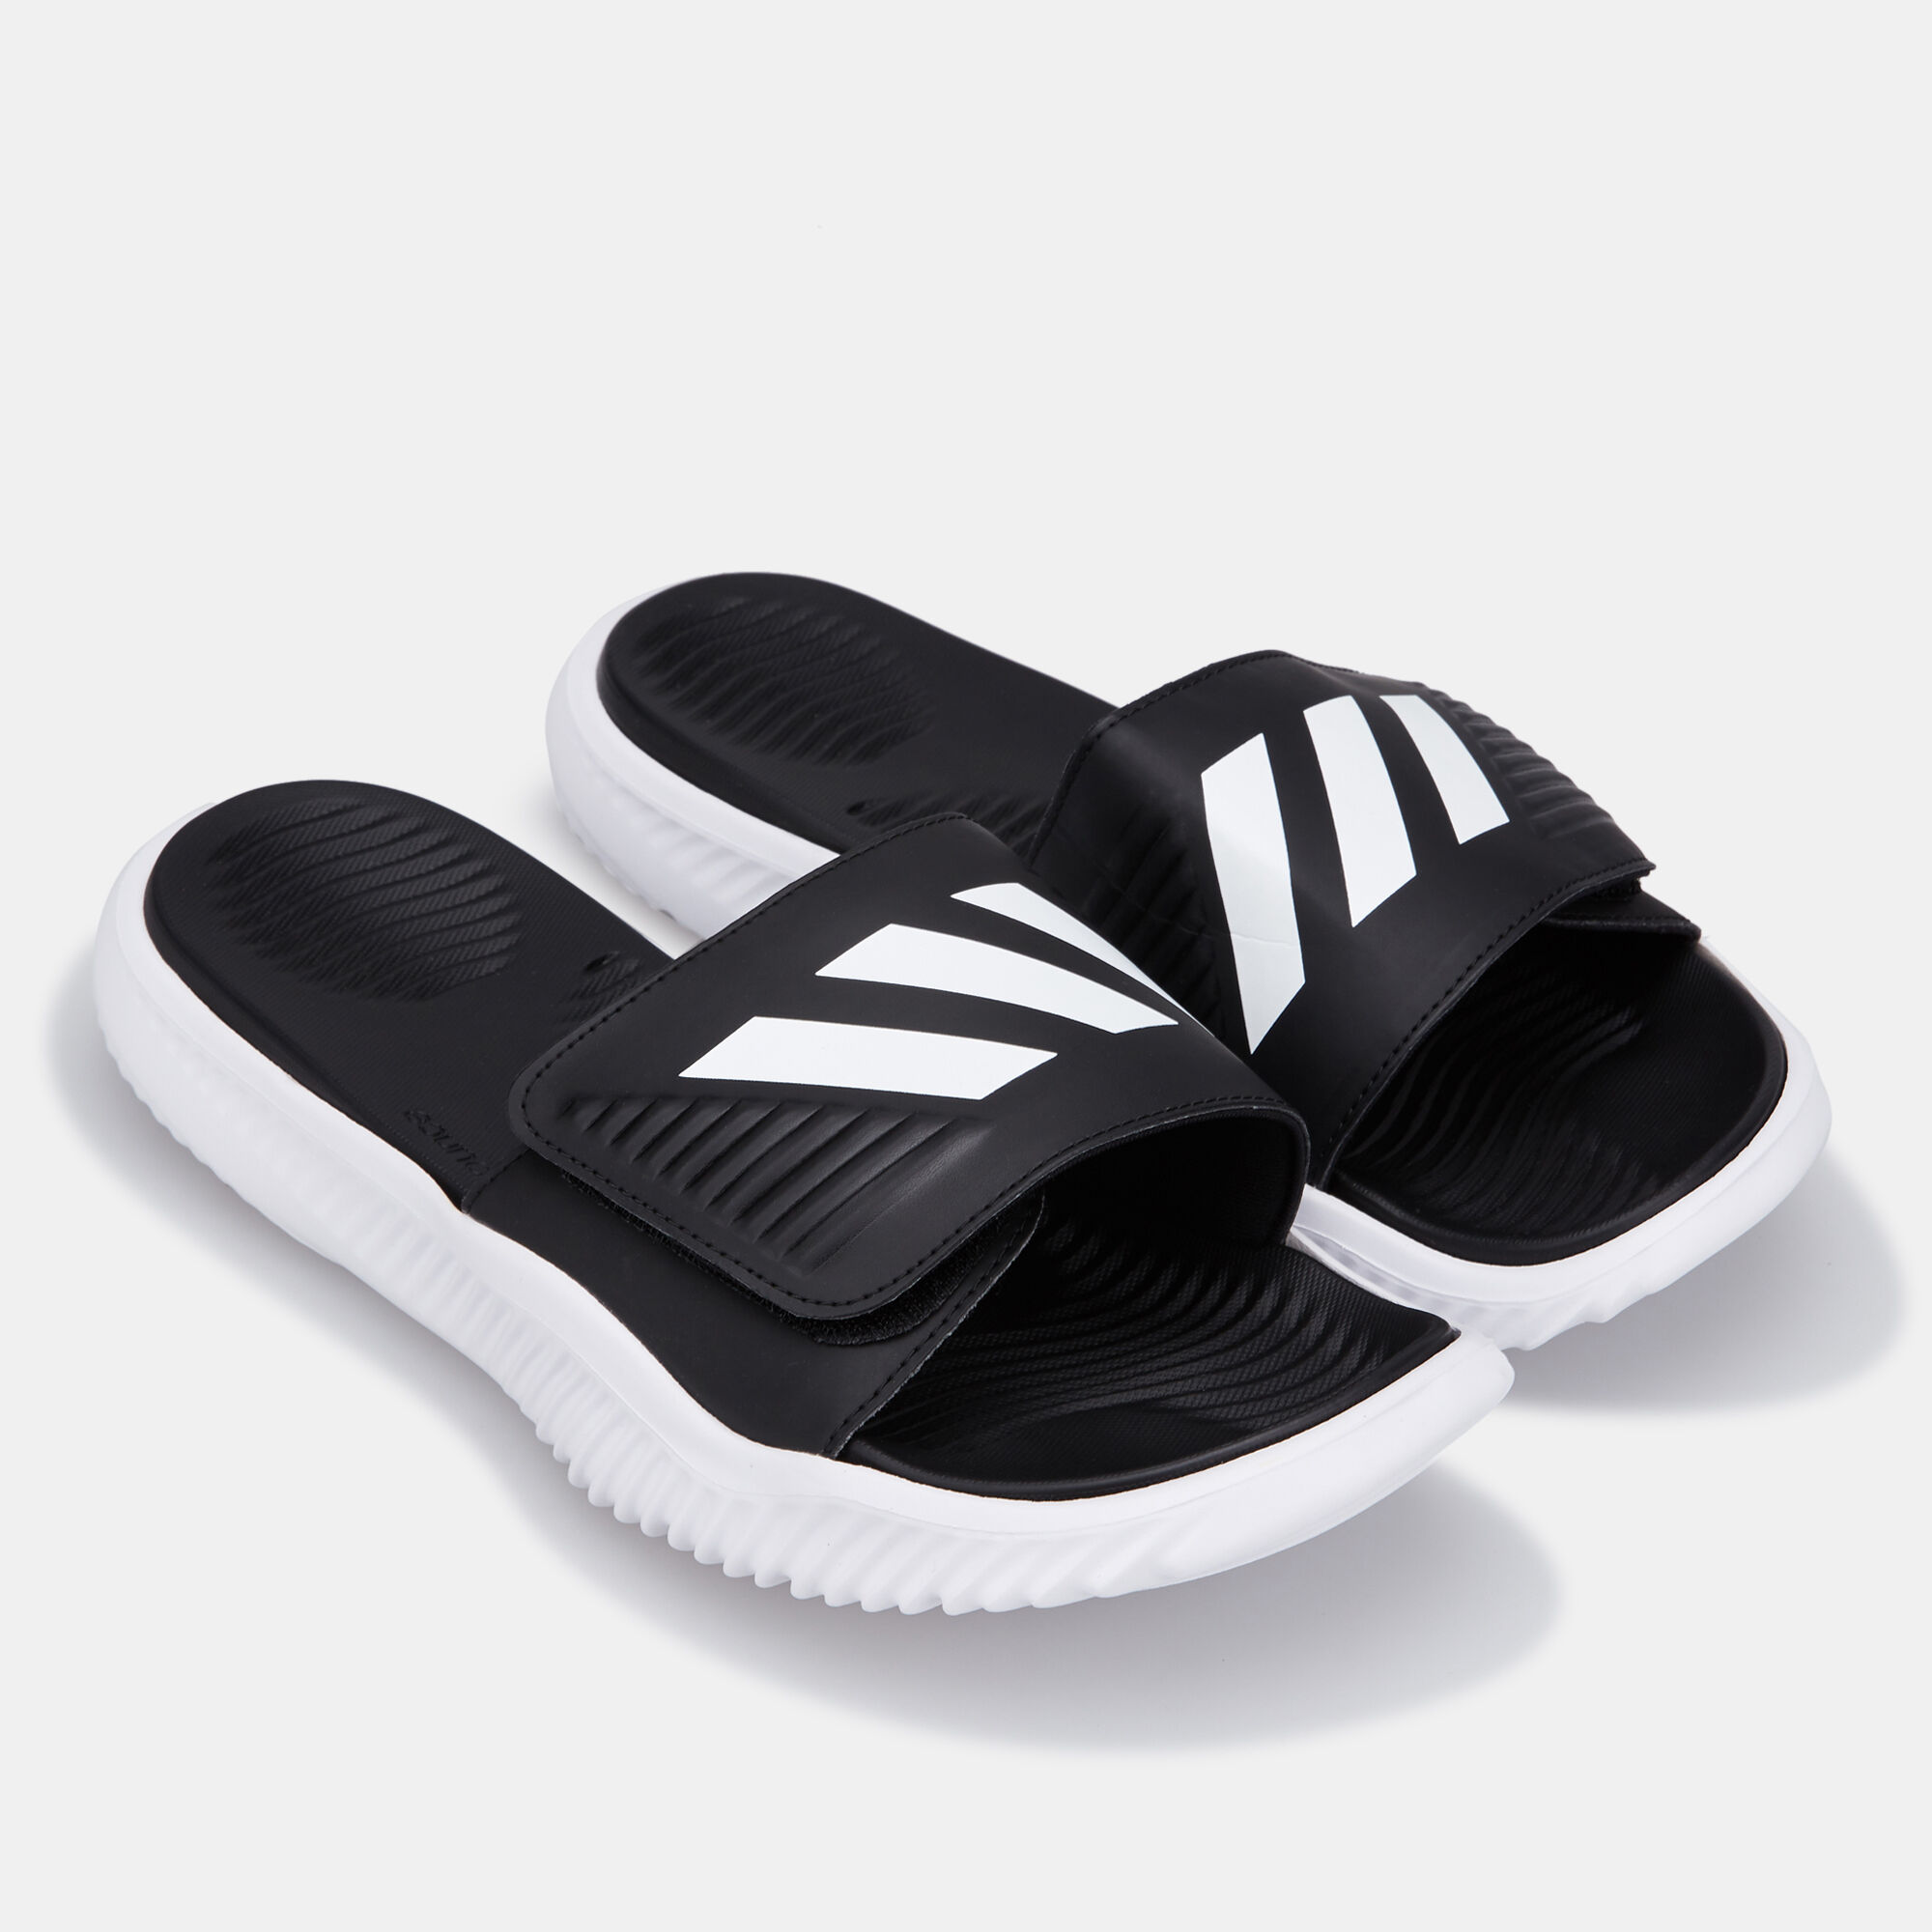 adidas alphabounce sandals